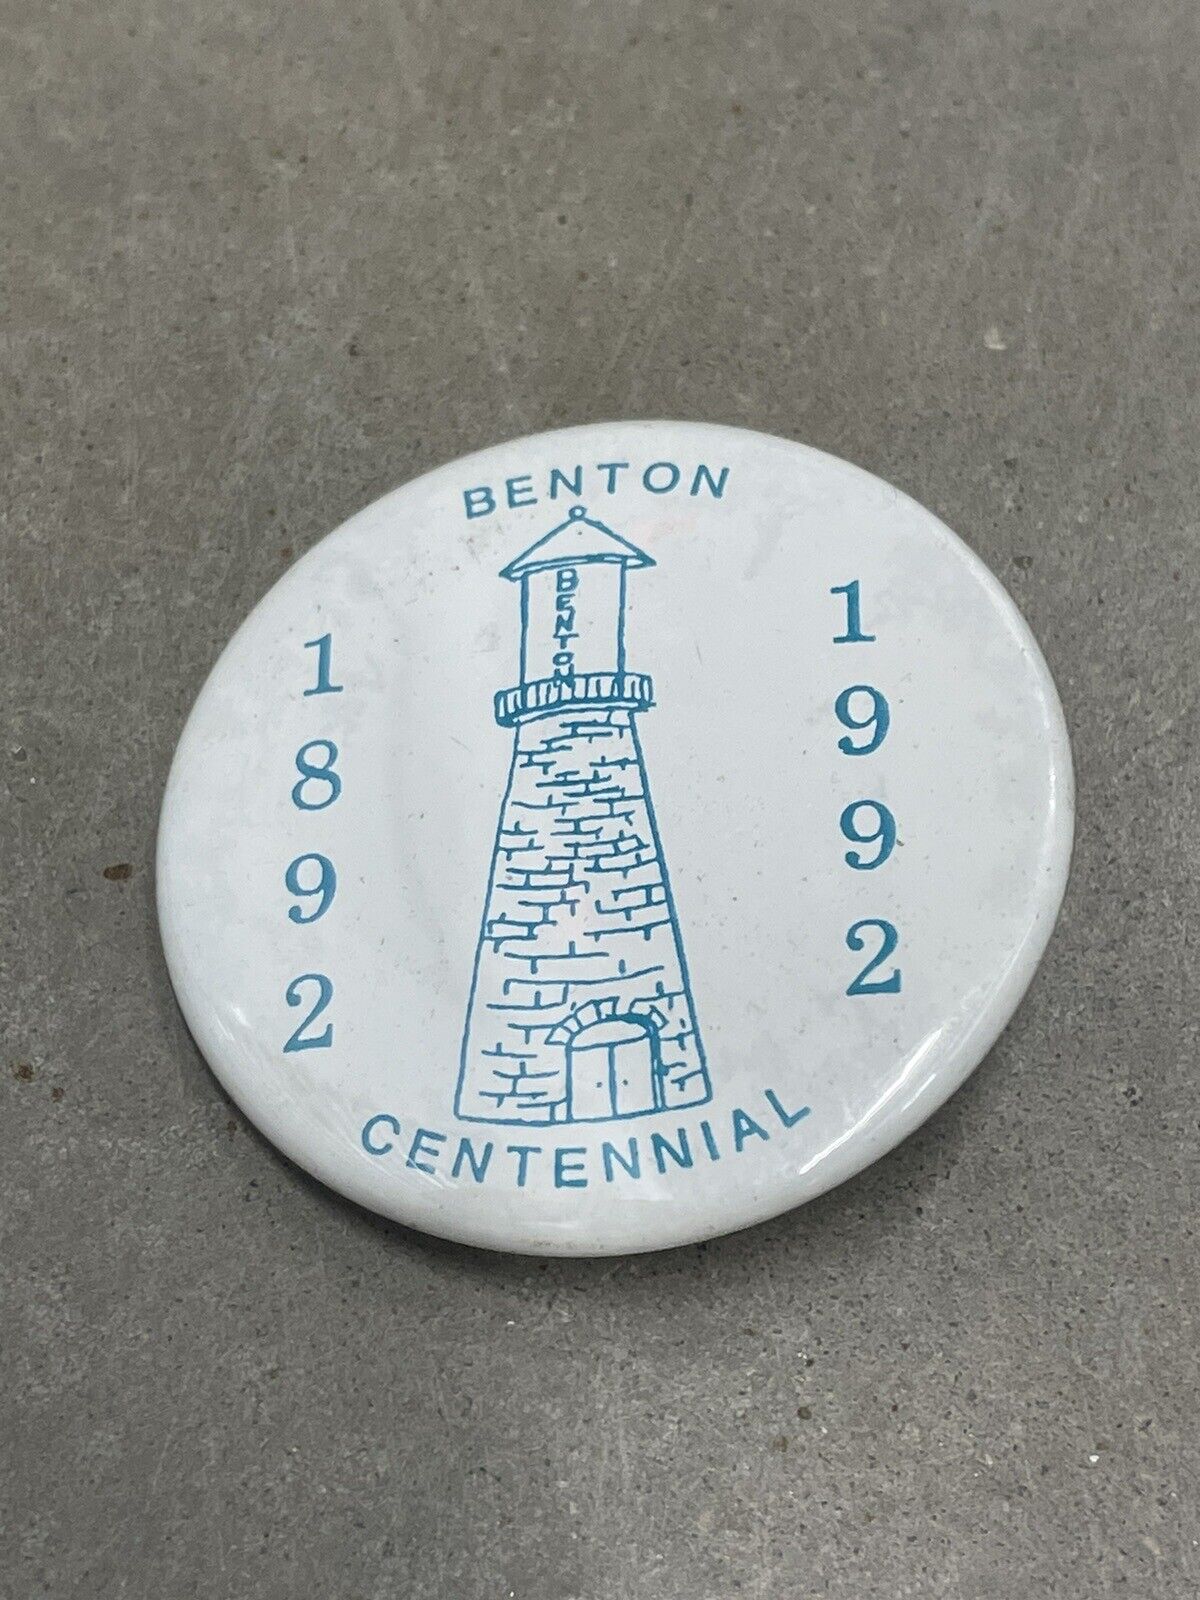 Vintage 1992 Benton Wisconsin Pinback Button Centennial Celebration White 2.25”